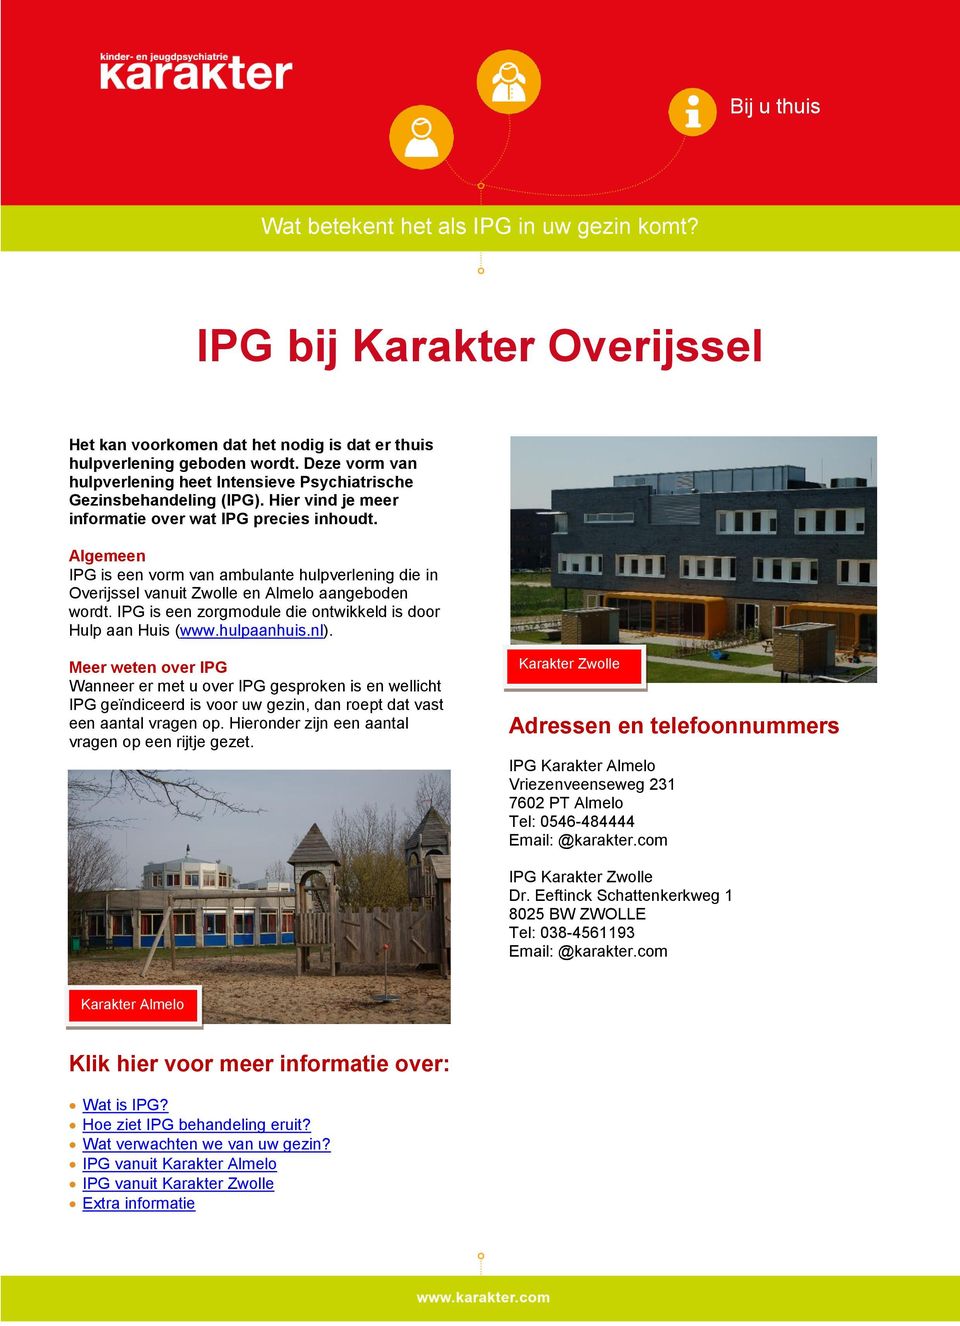 Algemeen IPG is een vorm van ambulante hulpverlening die in Overijssel vanuit Zwolle en Almelo aangeboden wordt. IPG is een zorgmodule die ontwikkeld is door Hulp aan Huis (www.hulpaanhuis.nl).